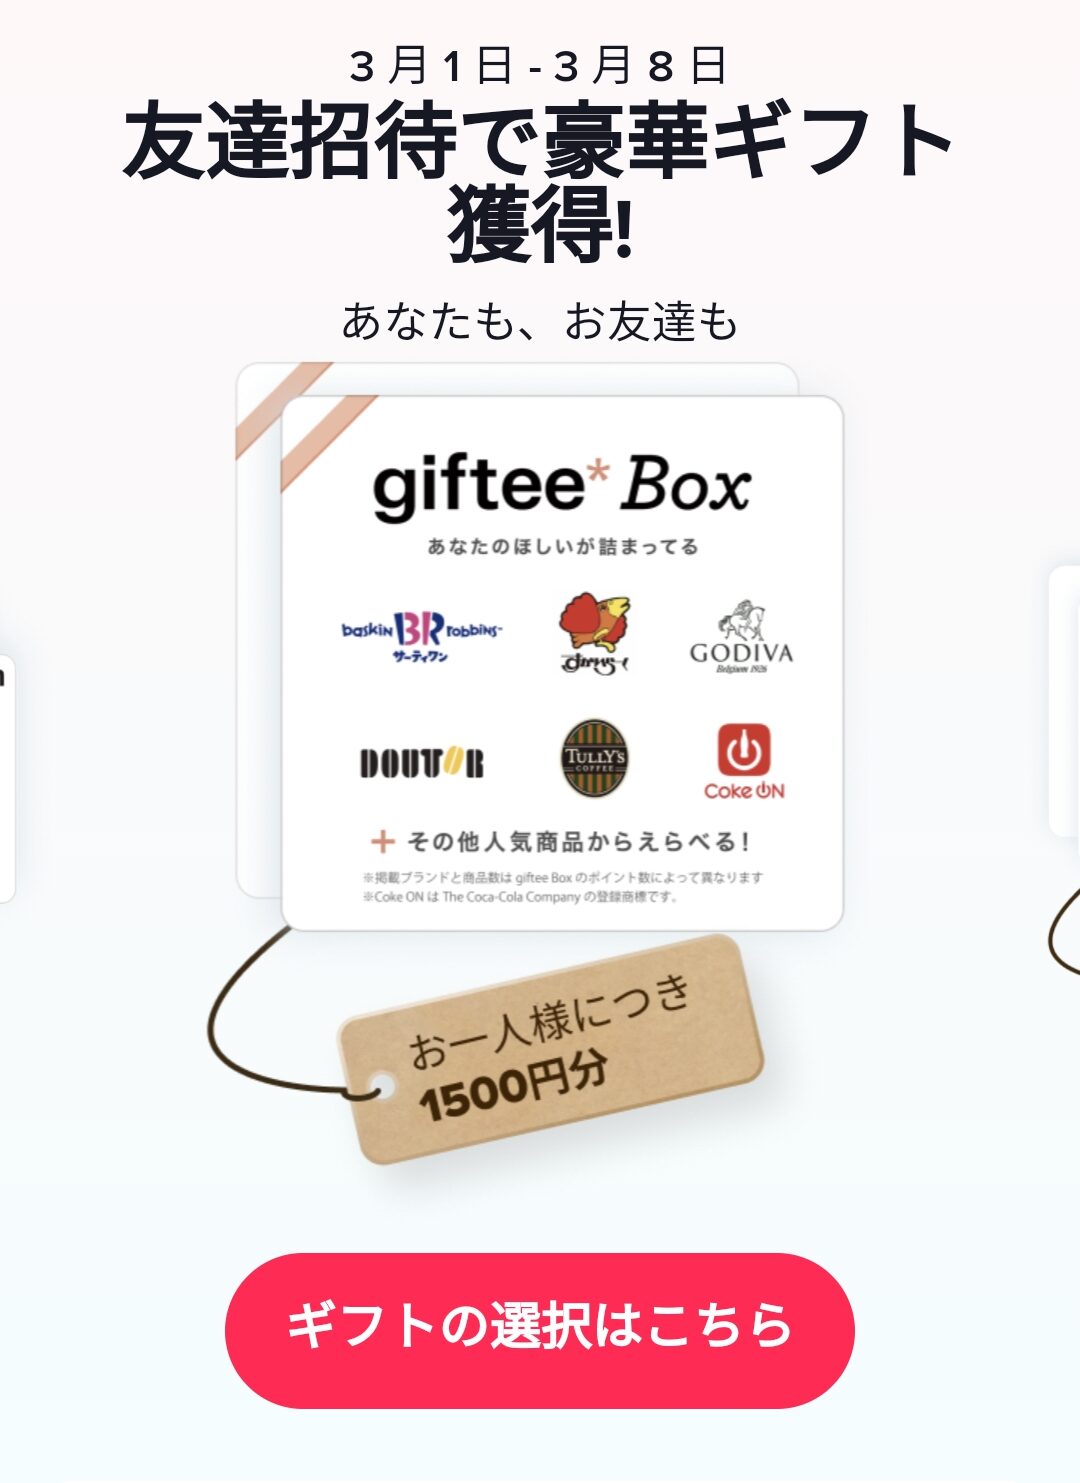 TikTokを新規インストールするともれなくアマゾンギフト券またはGiftee Box、えらべるPay1500円分が貰える。4/6～5/10。